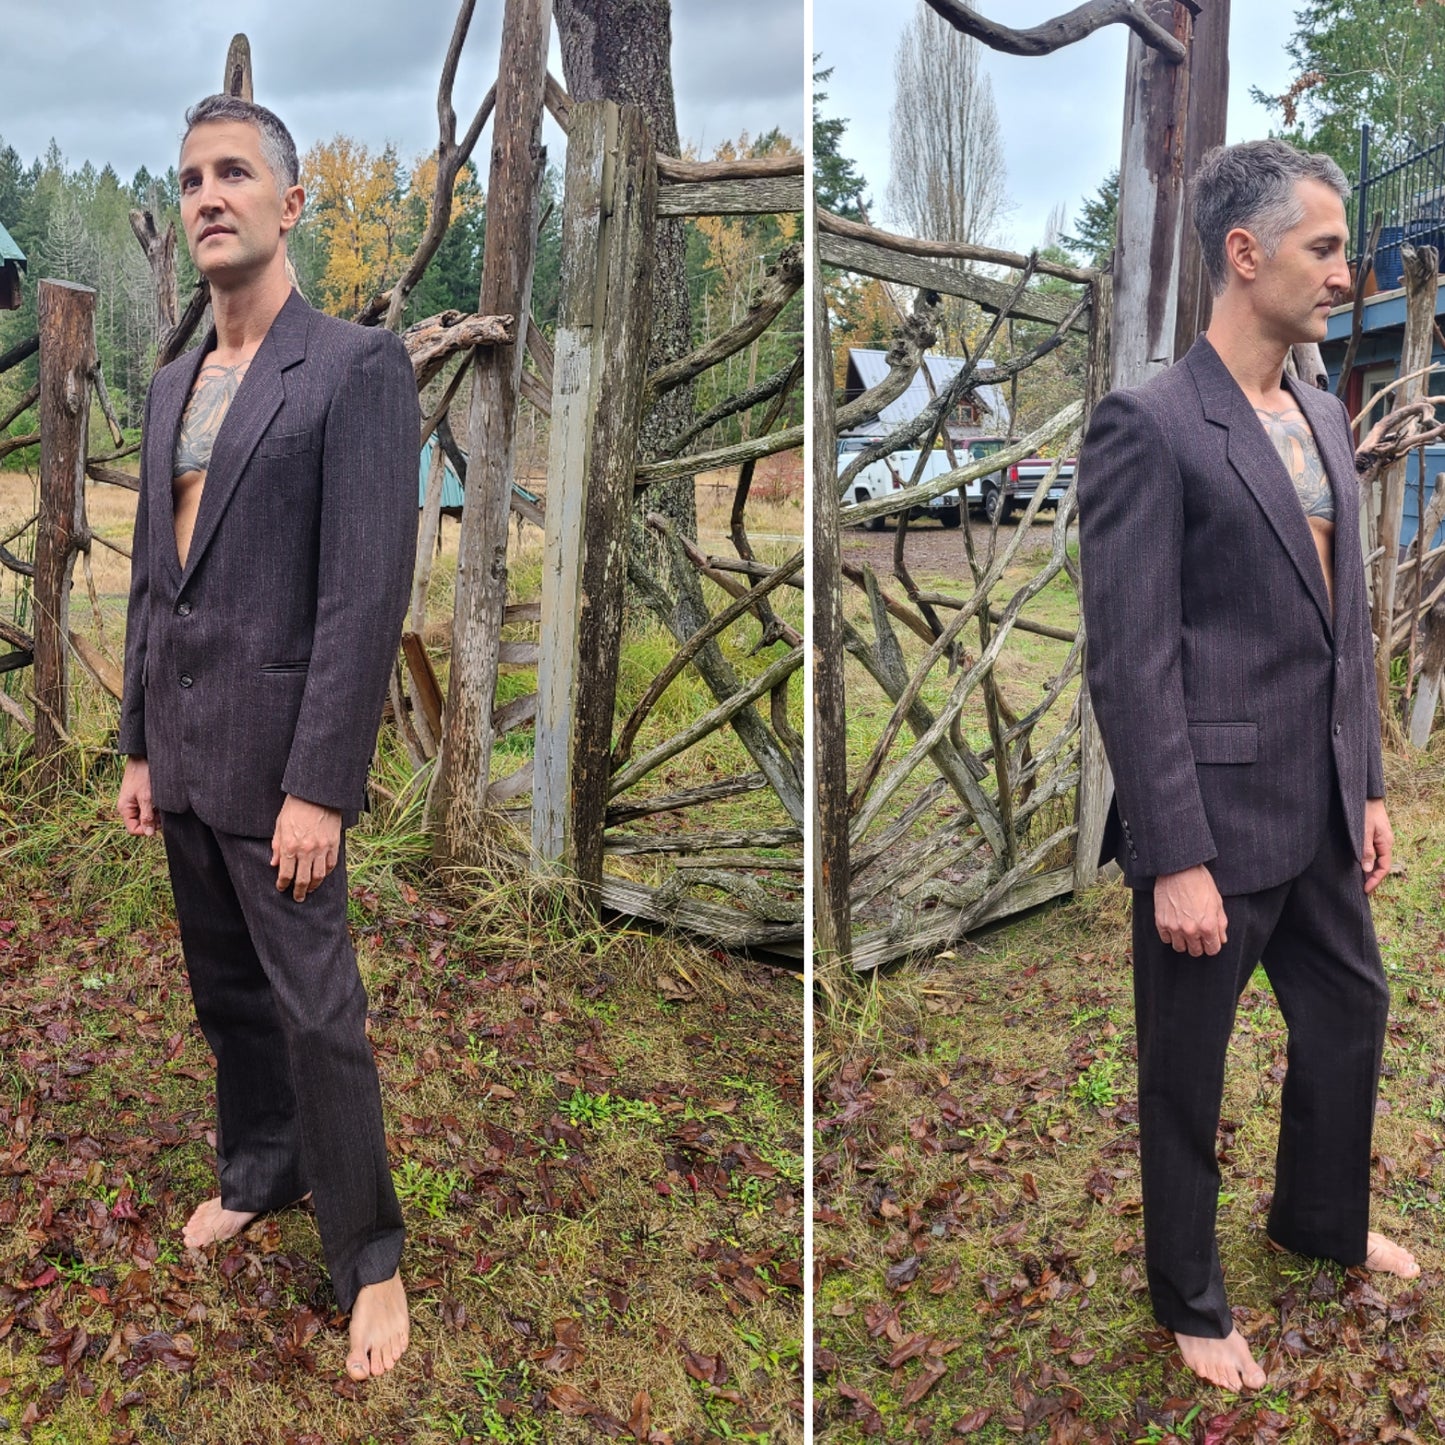 The Yves Saint Laurent Wool Suit